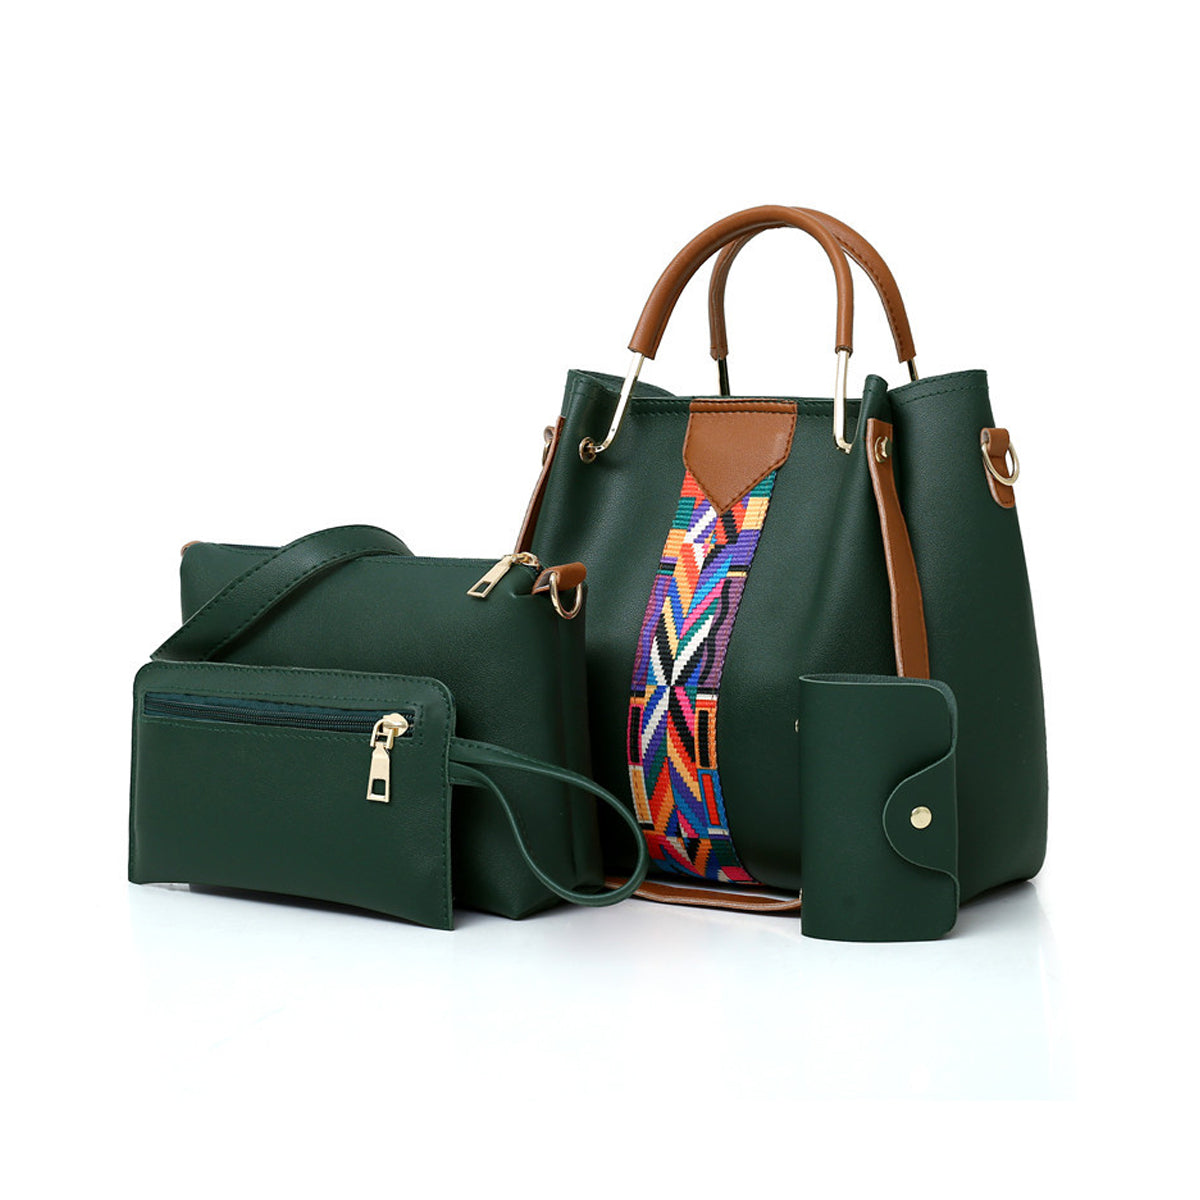 Four-piece Fashion Handbag One-shoulder Messenger Bag